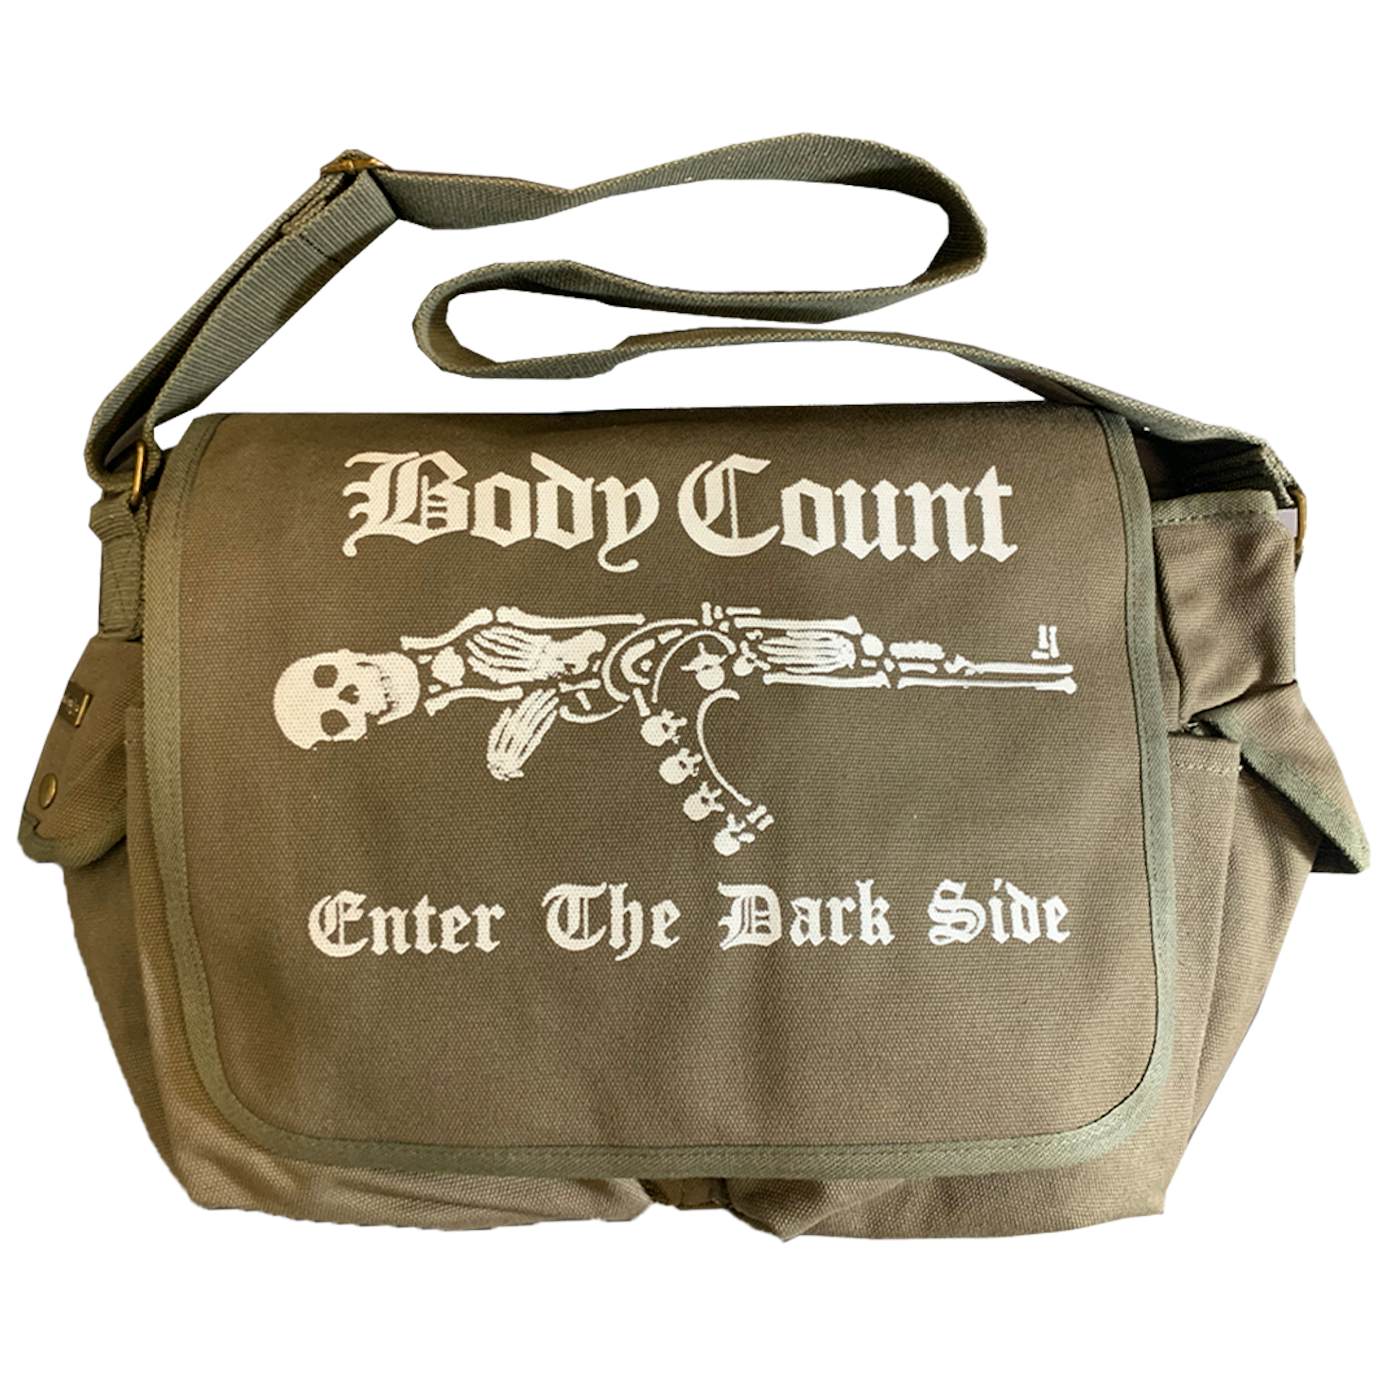 Body Count "Enter The Darkside" Messenger Bag